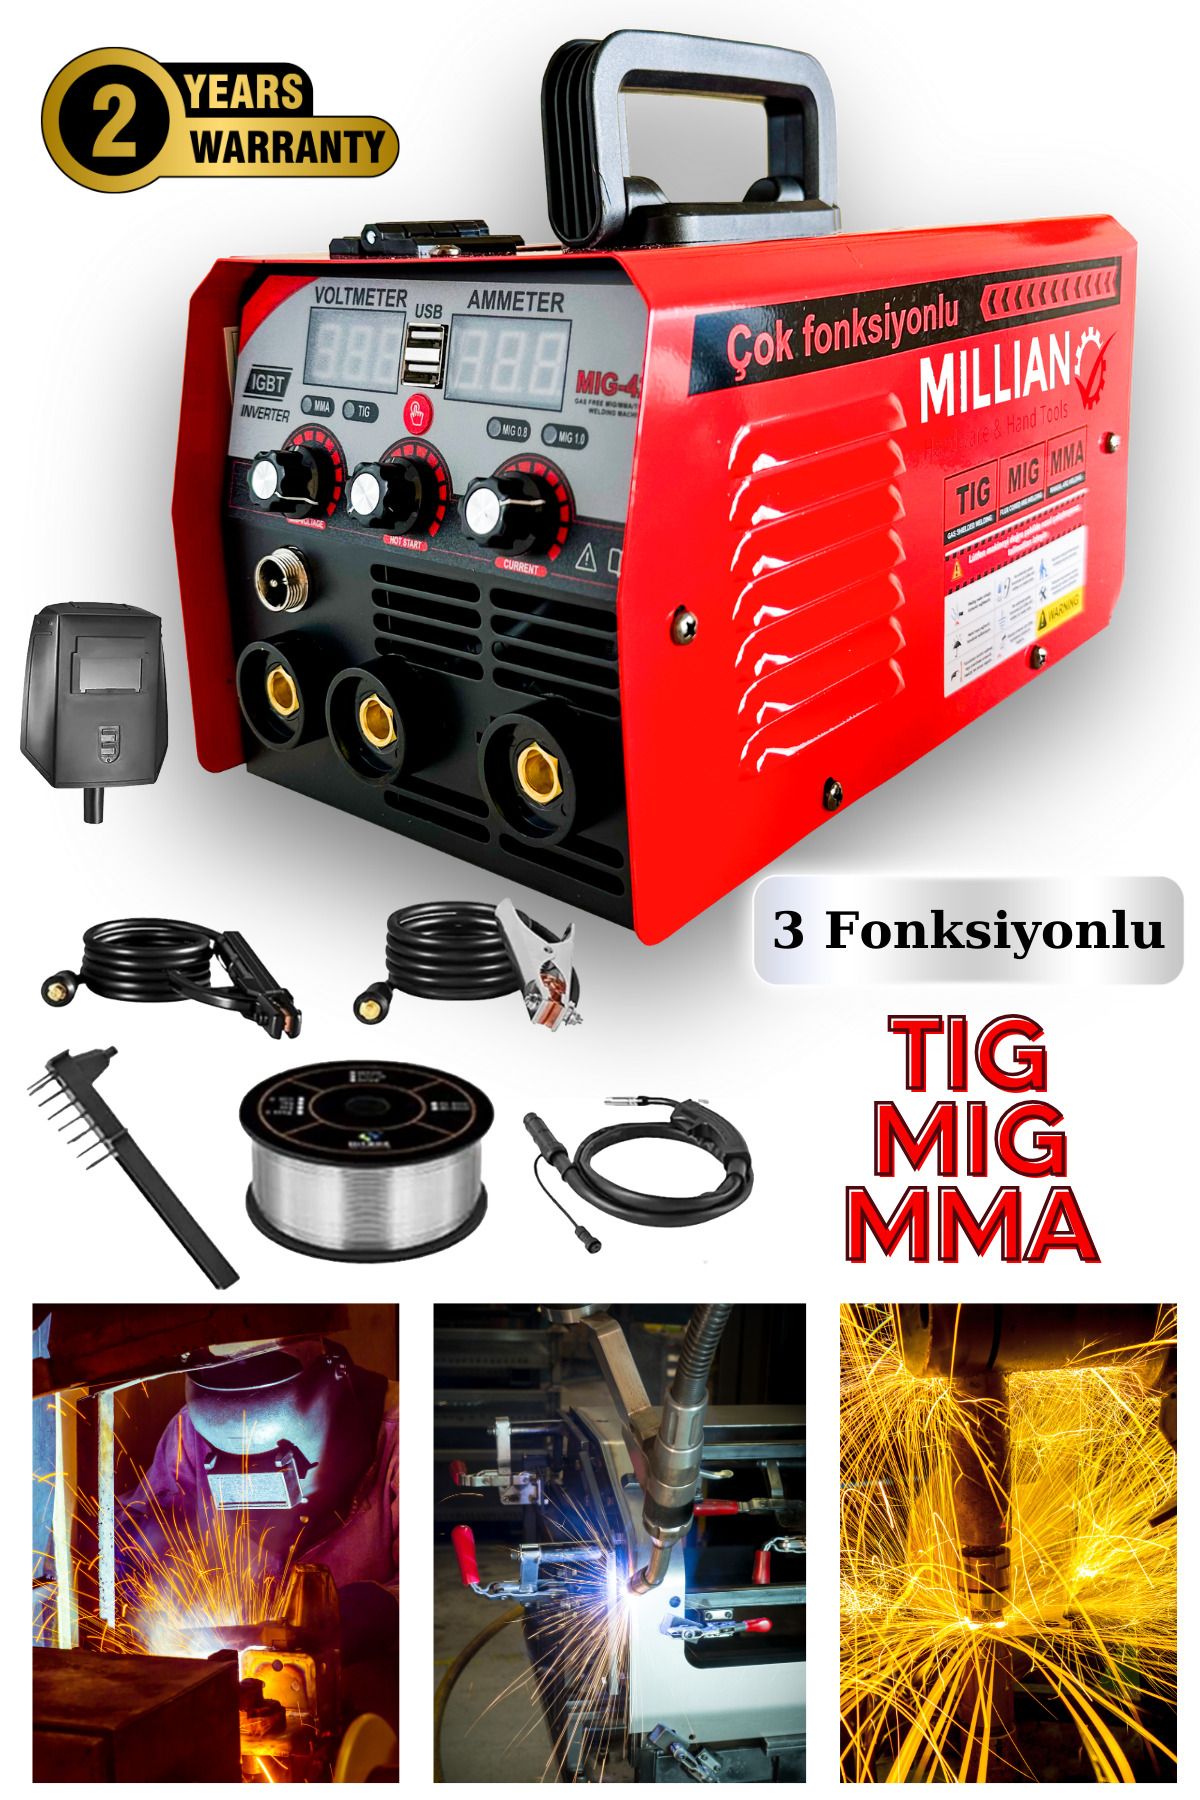 Genel Markalar 3 Fonksiyonlu Profesyonel Gazsız Gazaltı Kaynak Makinesi (TIG - MIG - MMA ÜÇÜ BİR ARADA) 420 Amper